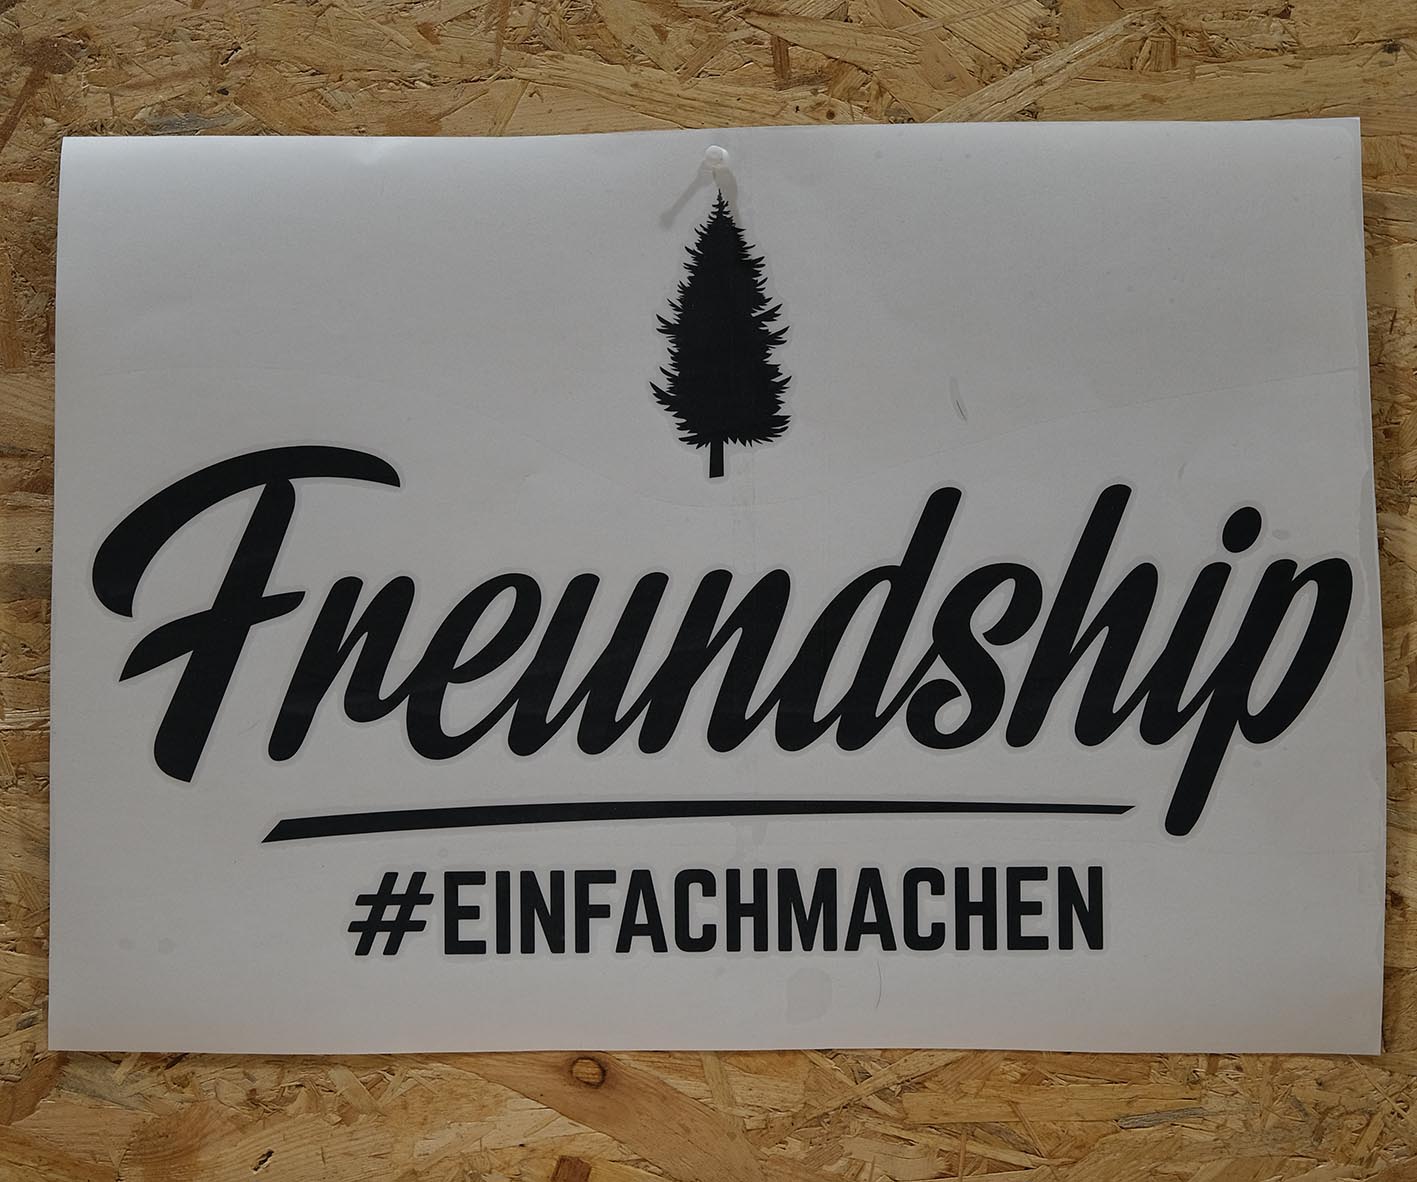 Freundship Logo "#einfachmachen" Sticker groß